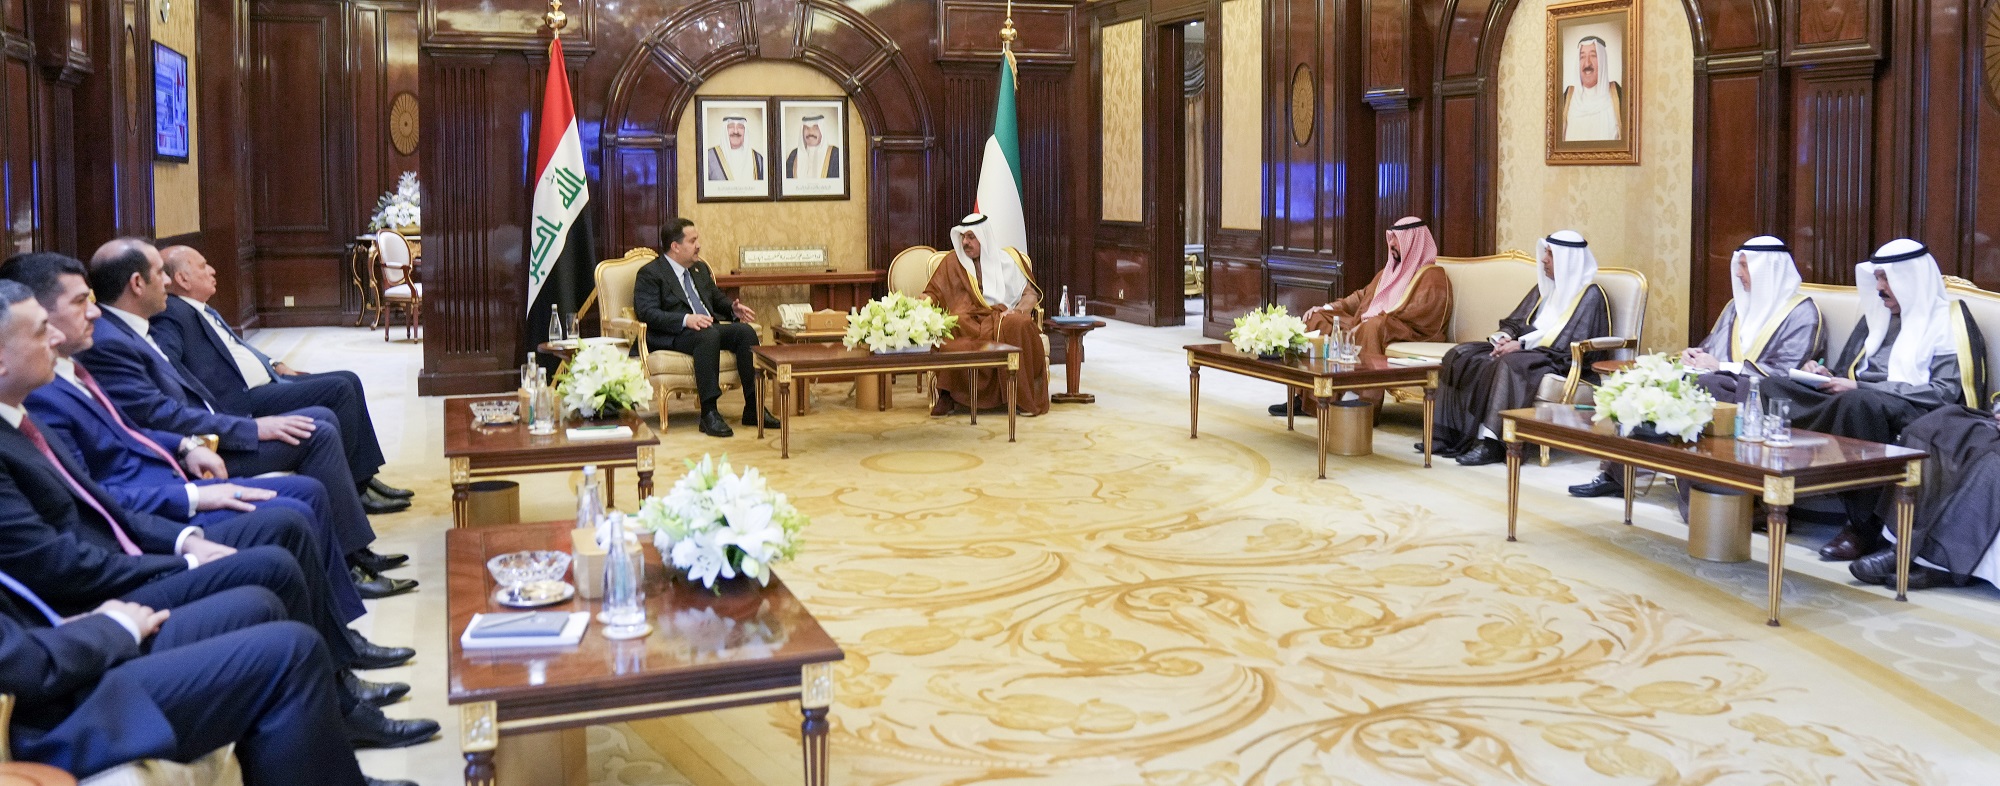 رئيس الوزراء العراقي: حكومتنا جادة في إقامة شراكة حقيقية مع الكويت تنعكس على مصلحة الشعبين الجارين